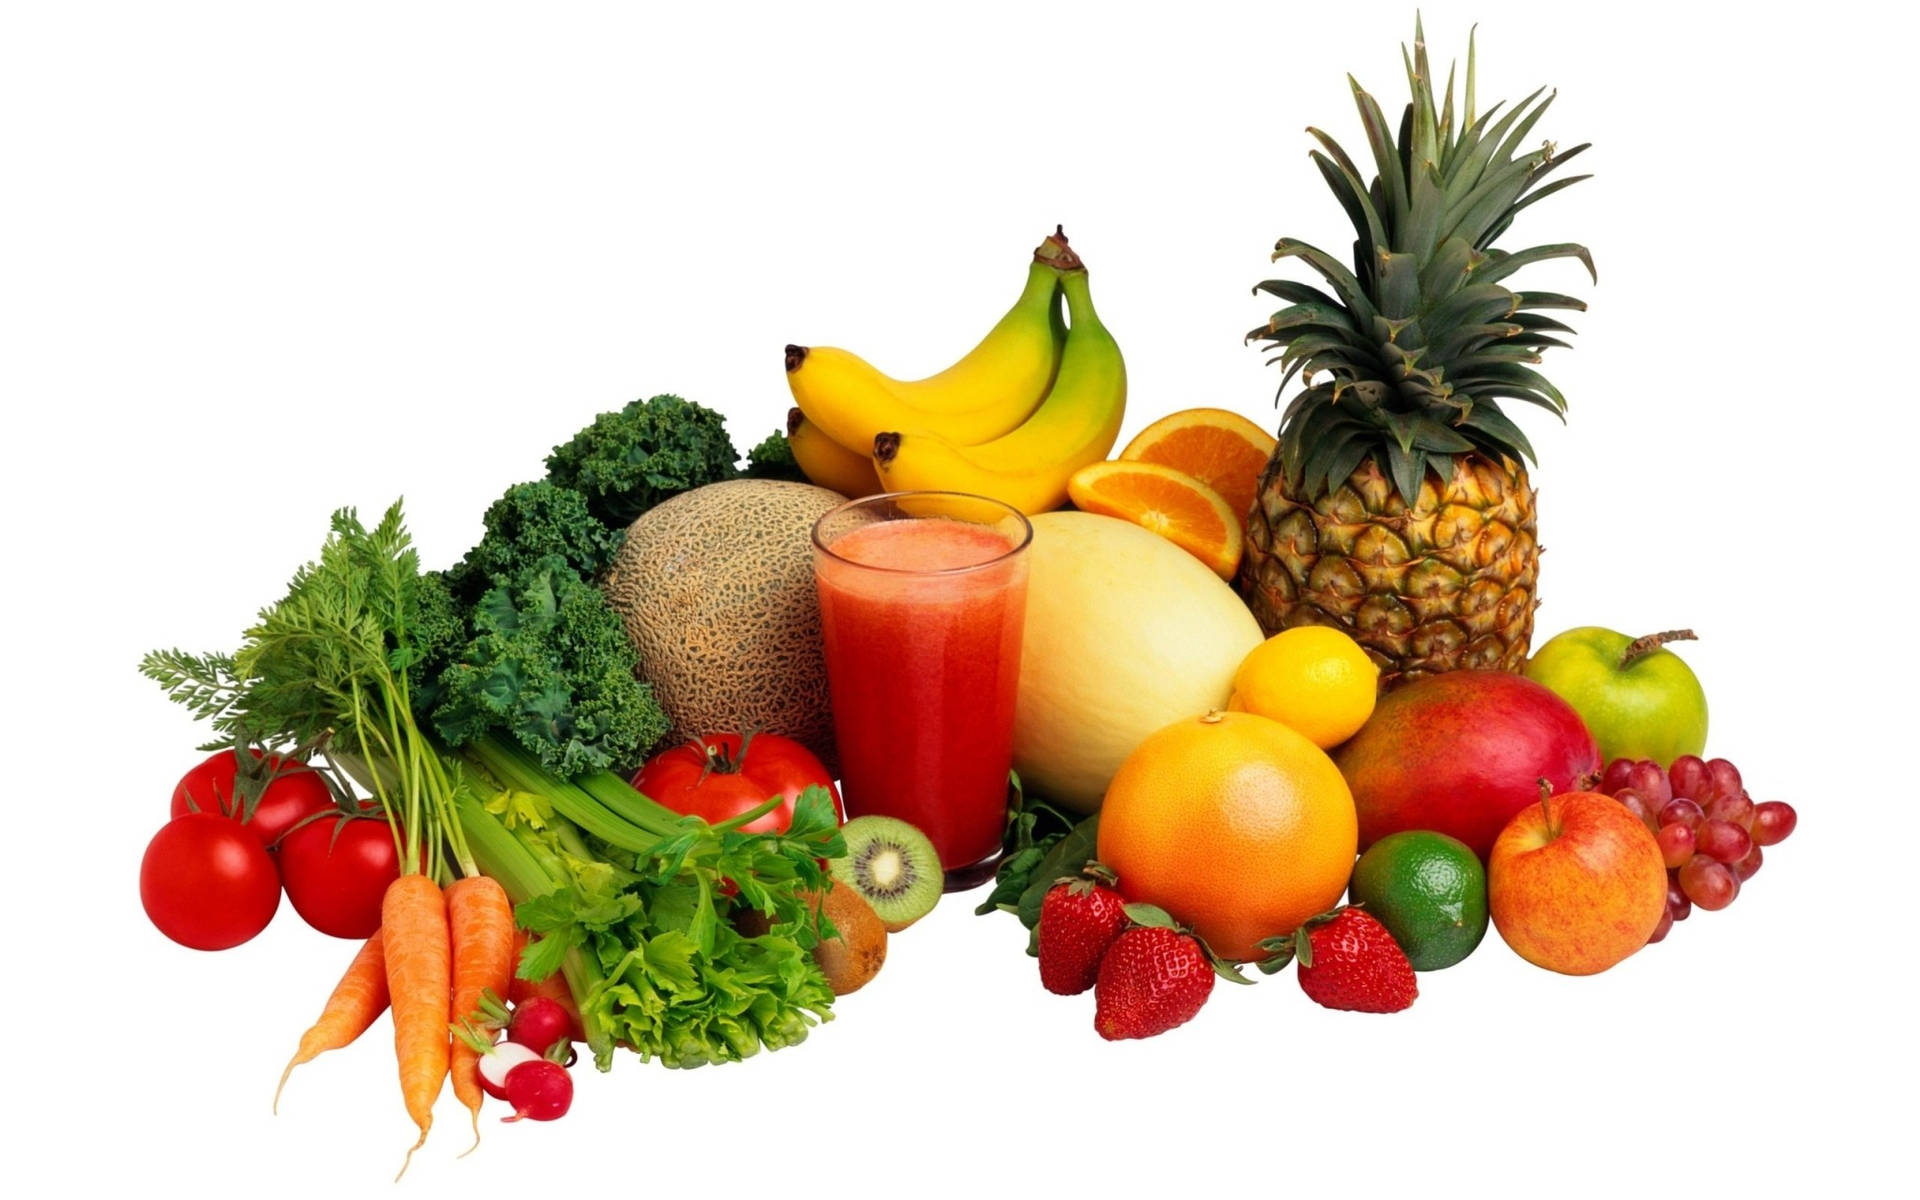 Fruits And Vegetables Food Desktop